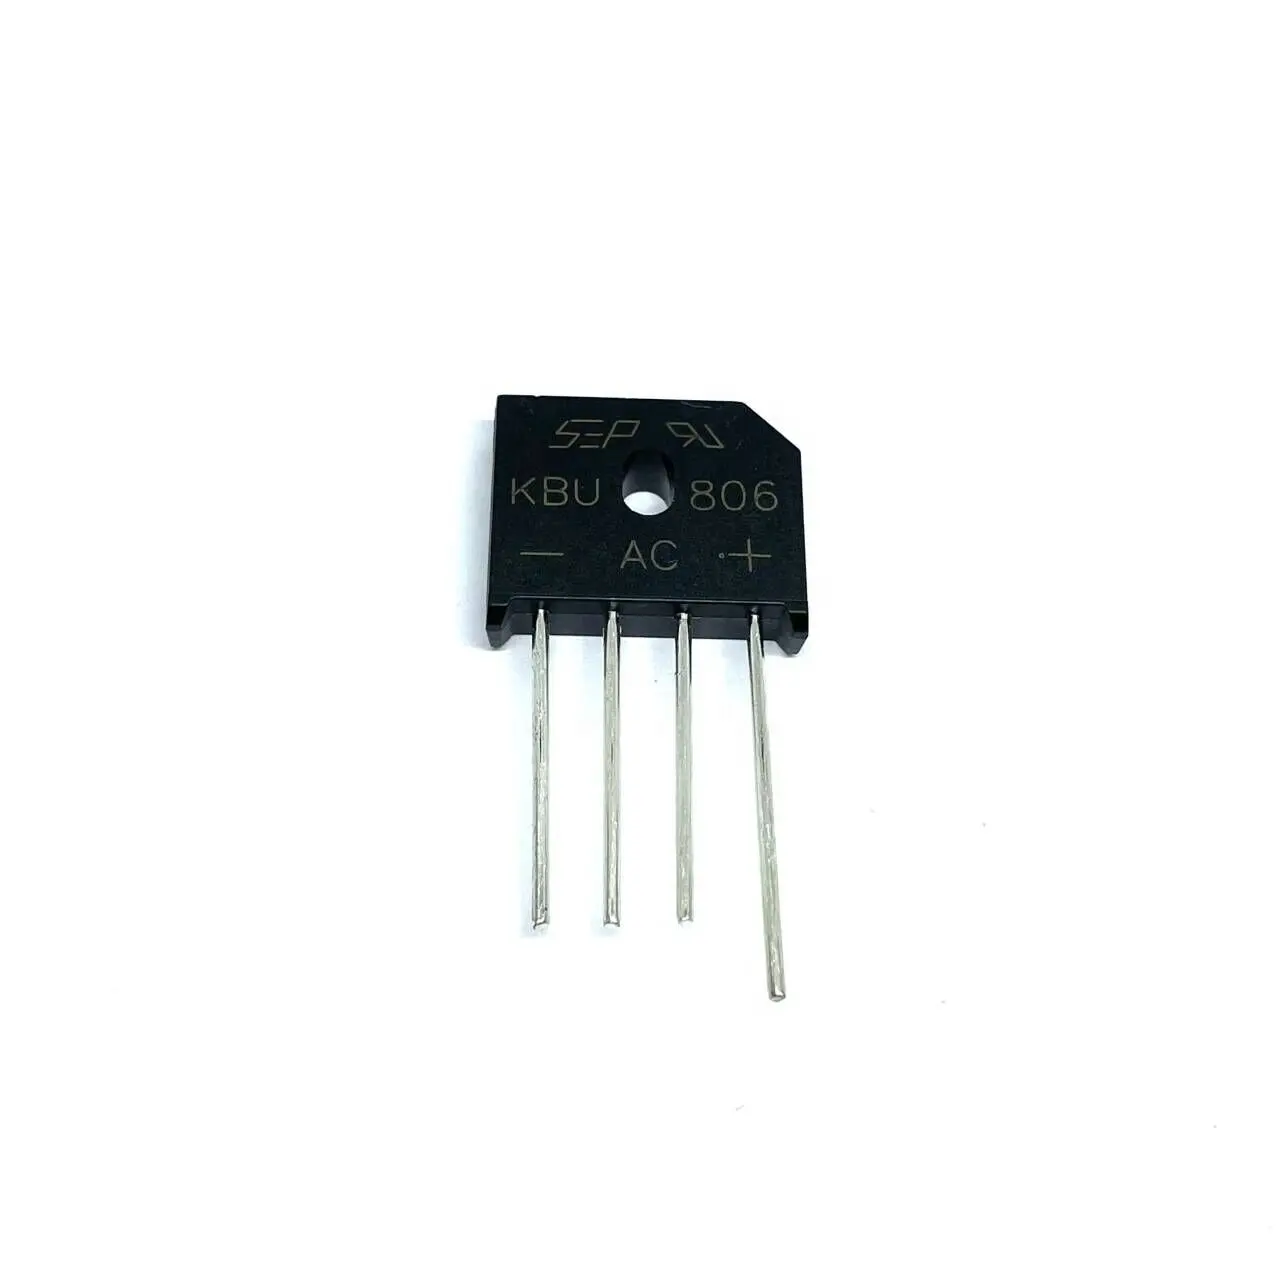 Merrillchip en stock Productos semiconductores discretos de alta calidad Diodos Rectificadores de puente KBU806G